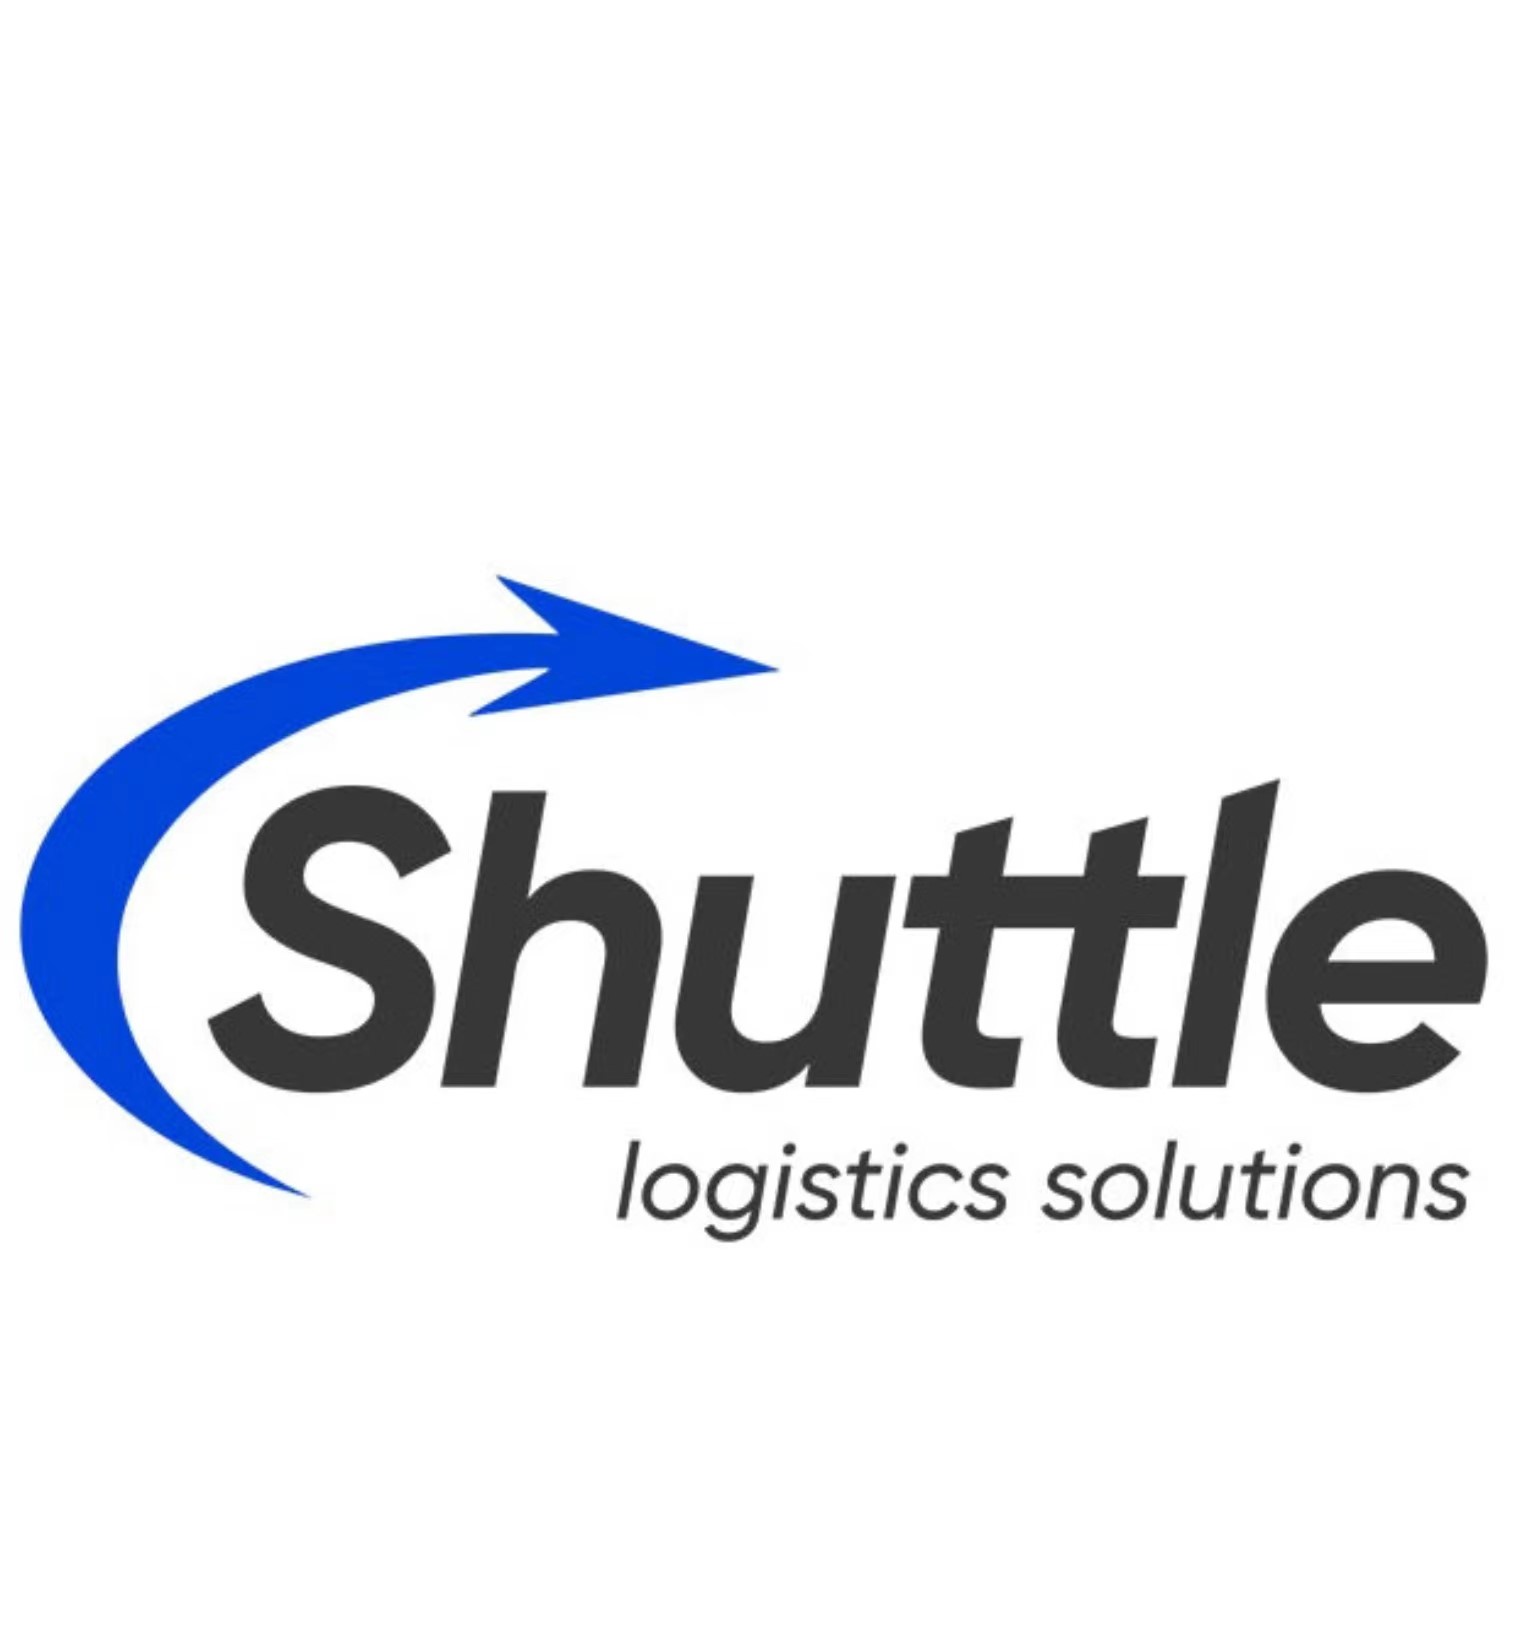 Shuttle Logistics